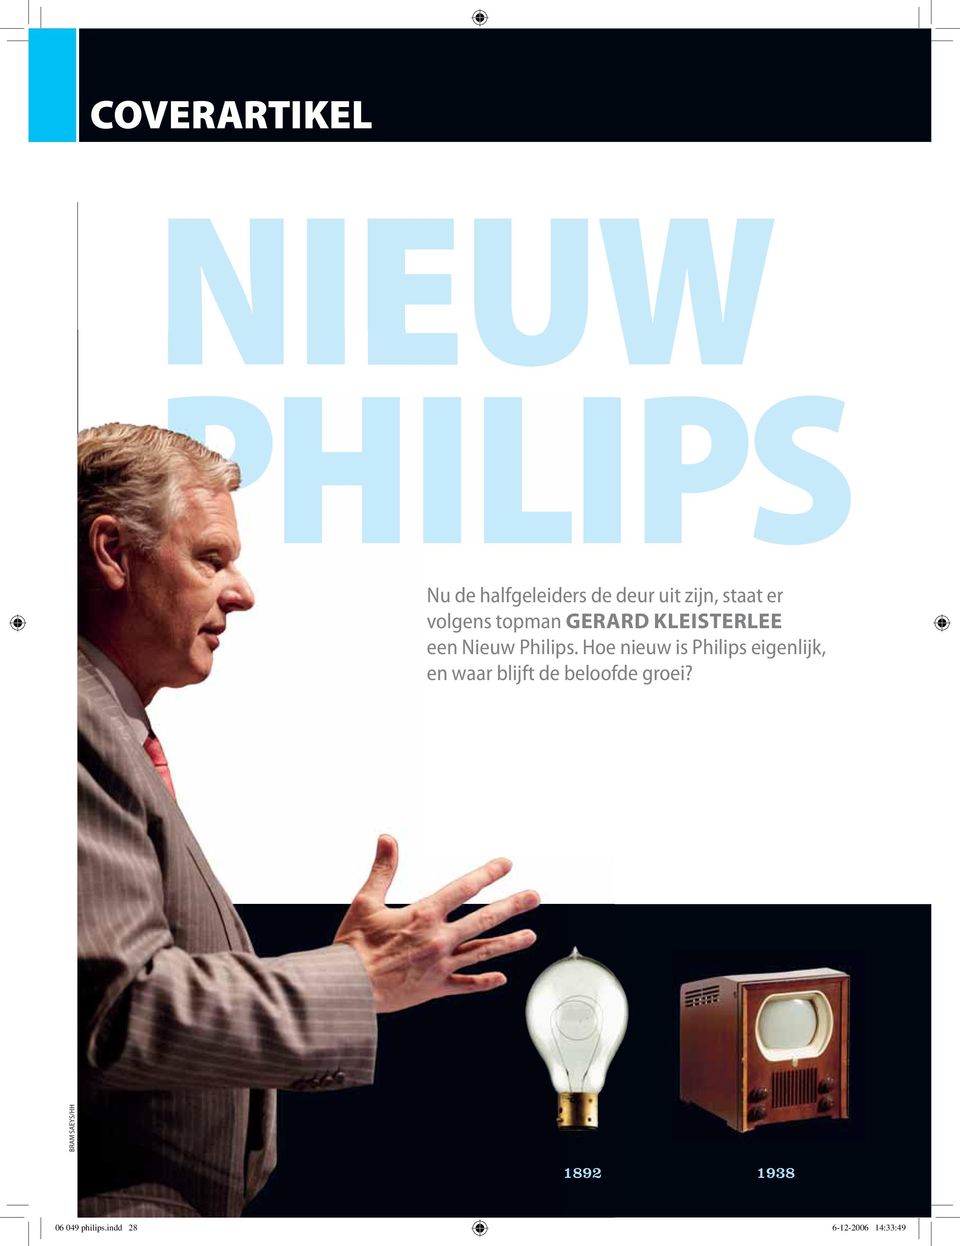 Hoe nieuw is Philips eigenlijk, en waar blijft de beloofde groei?